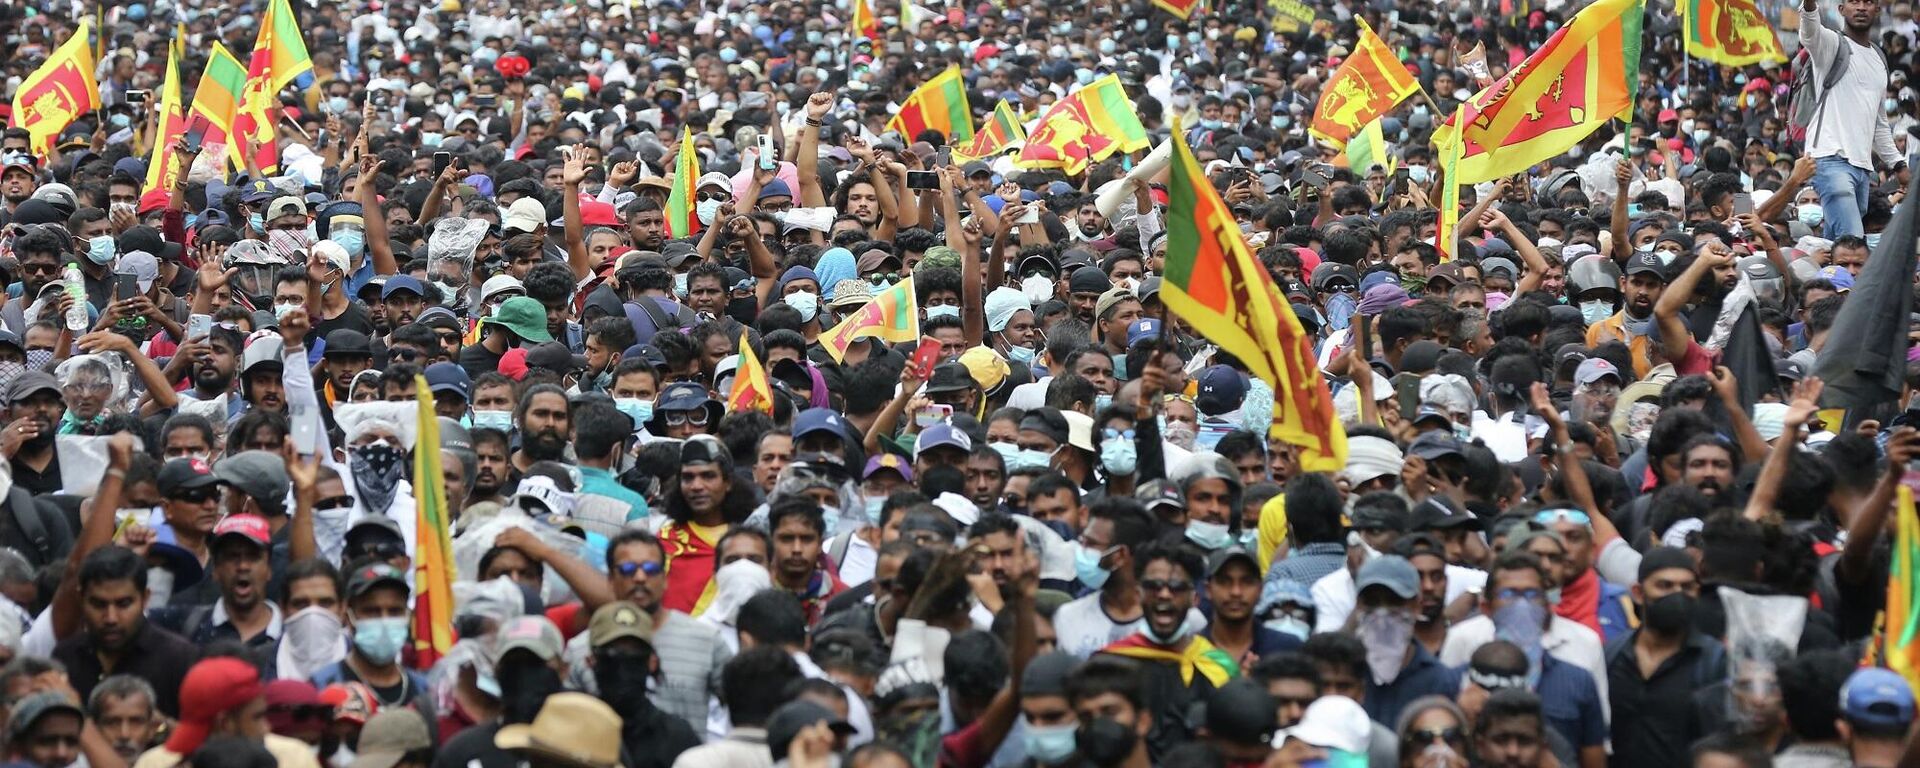  Sri Lanka’da derinleşen ekonomik krizin ardından binlerce protestocu, Devlet Başkanı Gotabaya Rajapaksa’nın başkanlık konutunu bastı. - Sputnik Türkiye, 1920, 13.07.2022